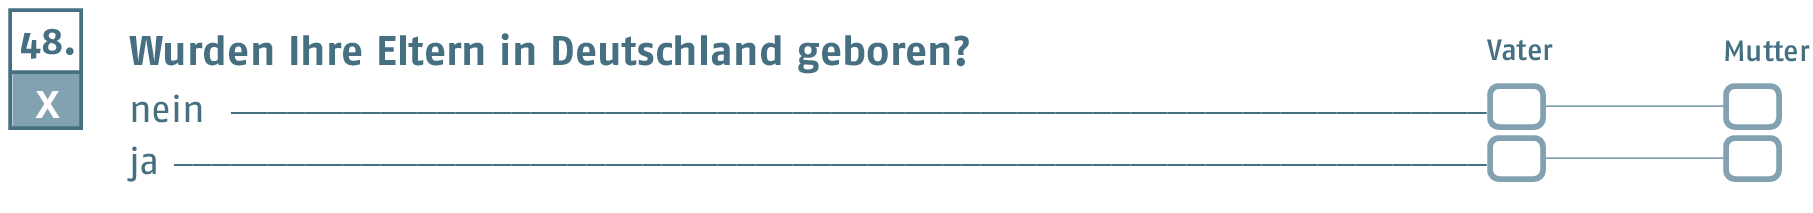 Wurden Ihre Eltern in Deutschland geboren?